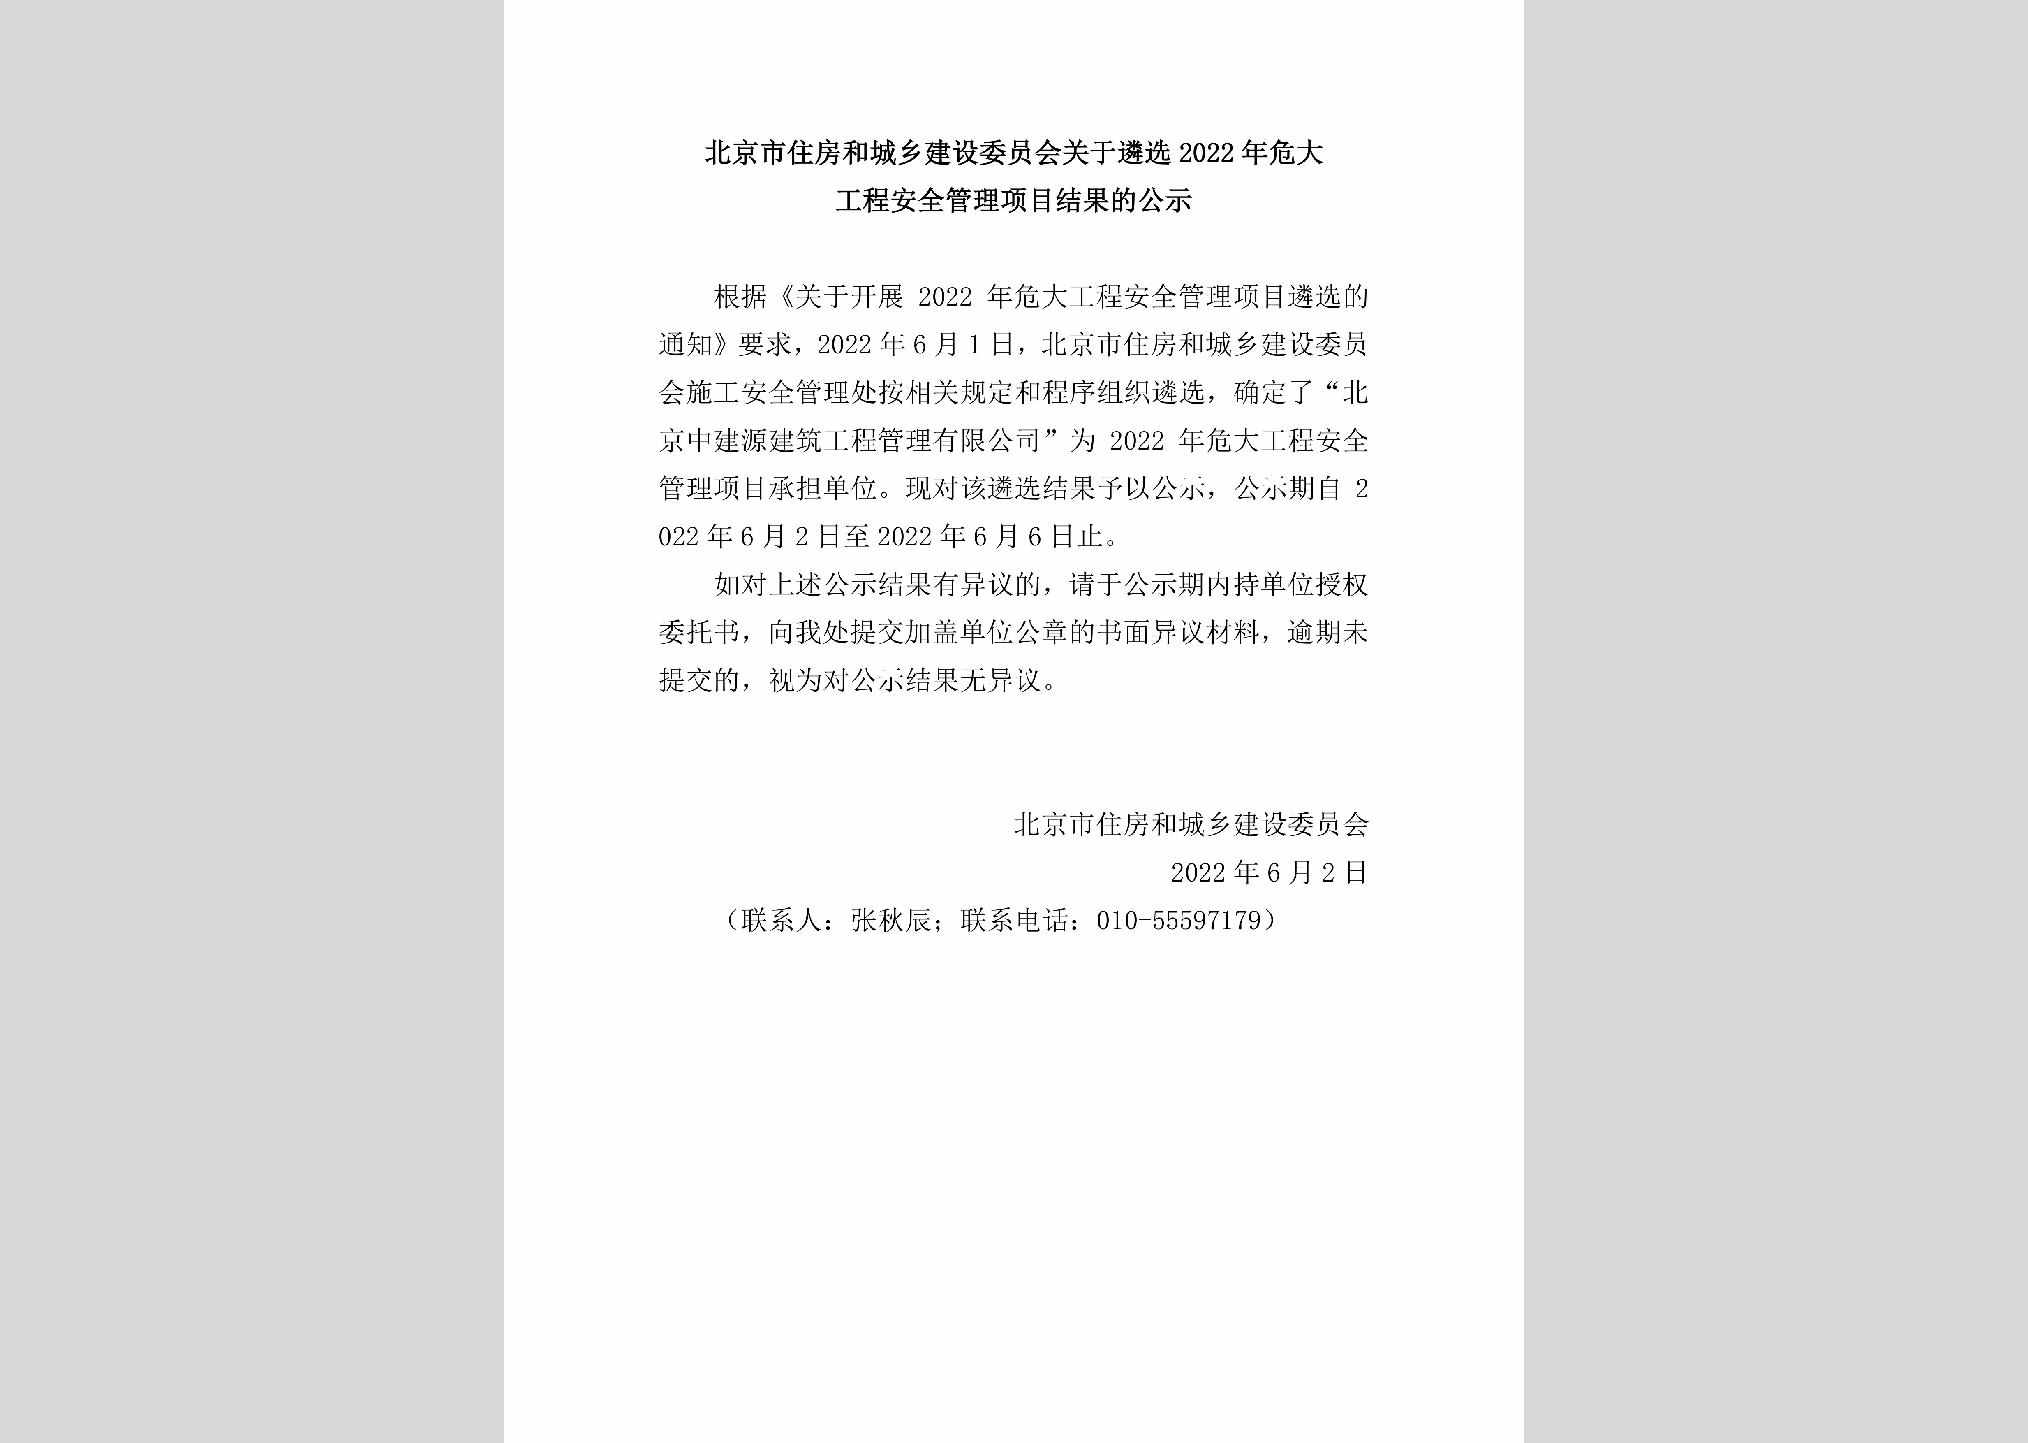 BJ-AQGLXMJG-2022：北京市住房和城乡建设委员会关于遴选2022年危大工程安全管理项目结果的公示